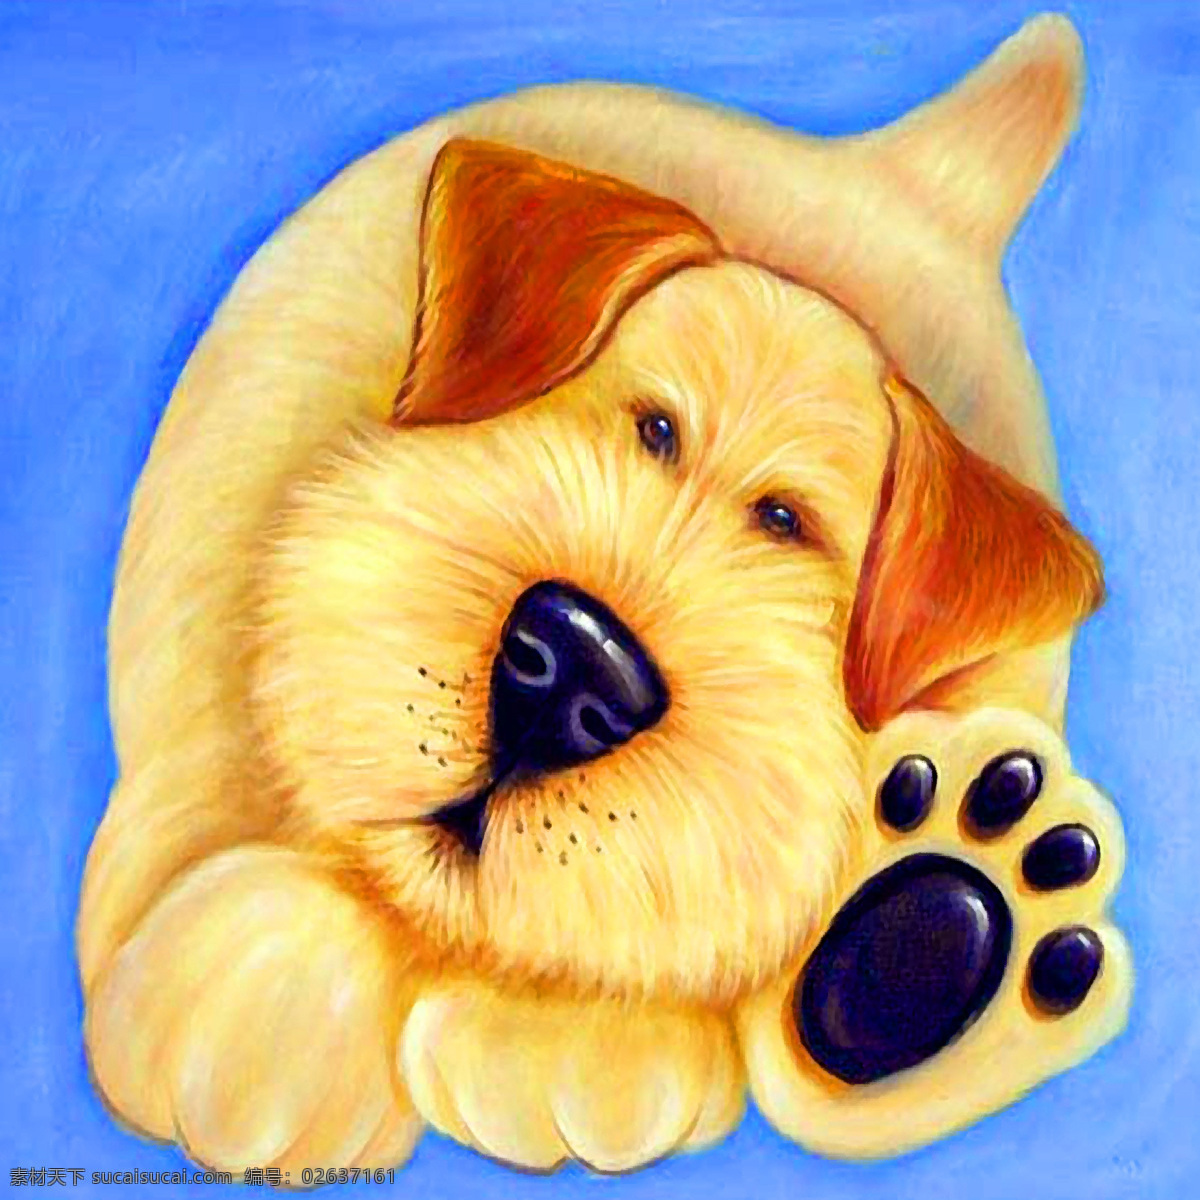 可爱 狗 壁画 宠物 狗狗 装饰素材 室内装饰用图